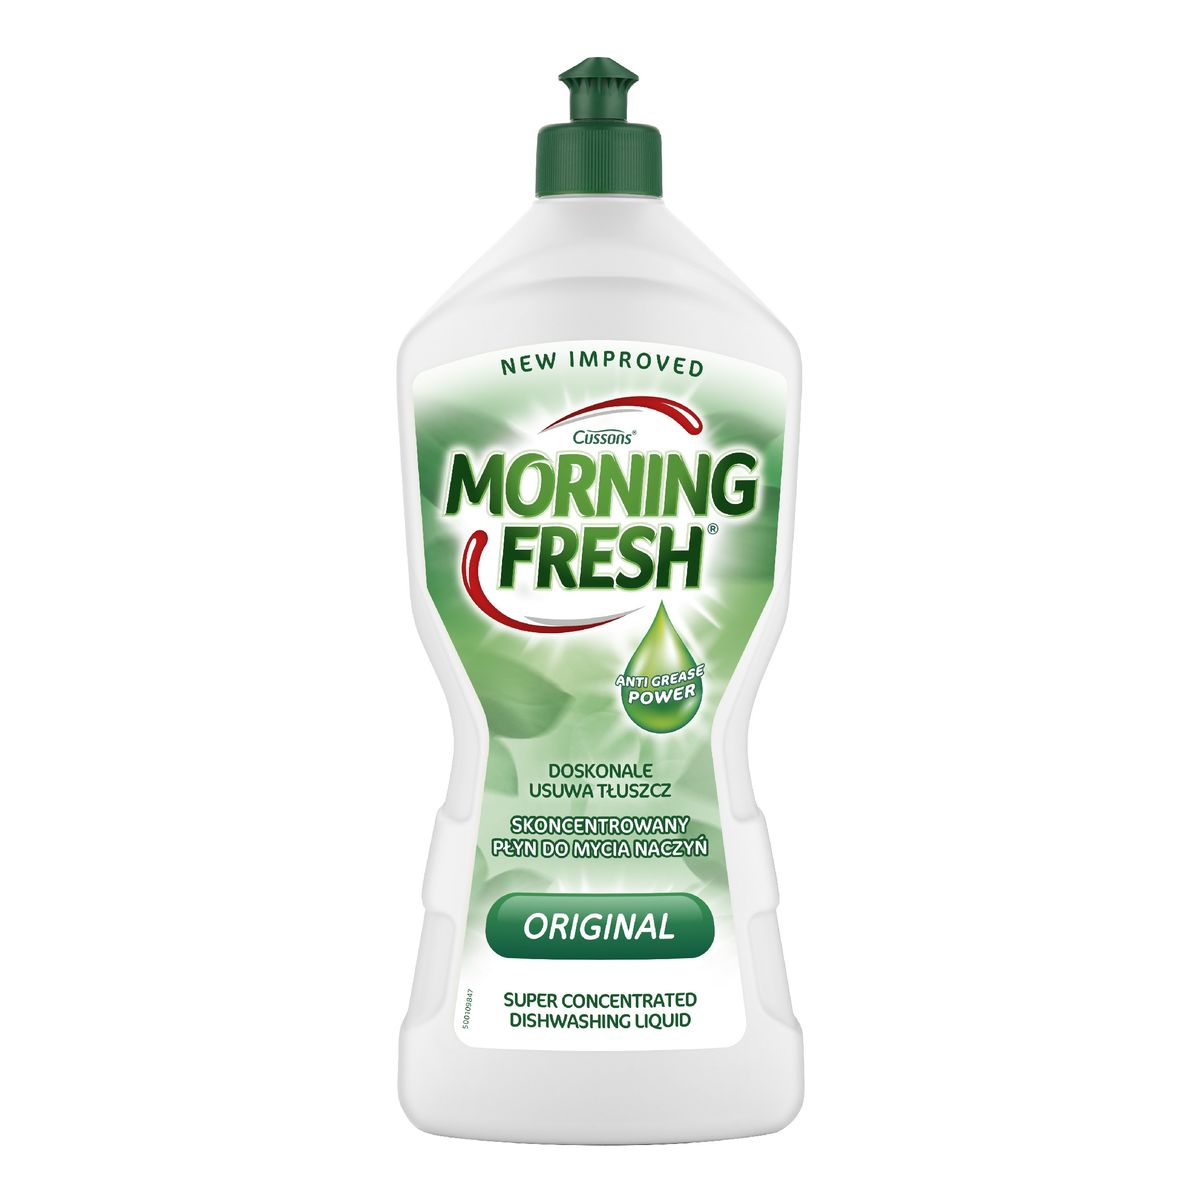 Morning Fresh skoncentrowany płyn do mycia naczyń-original 900ml